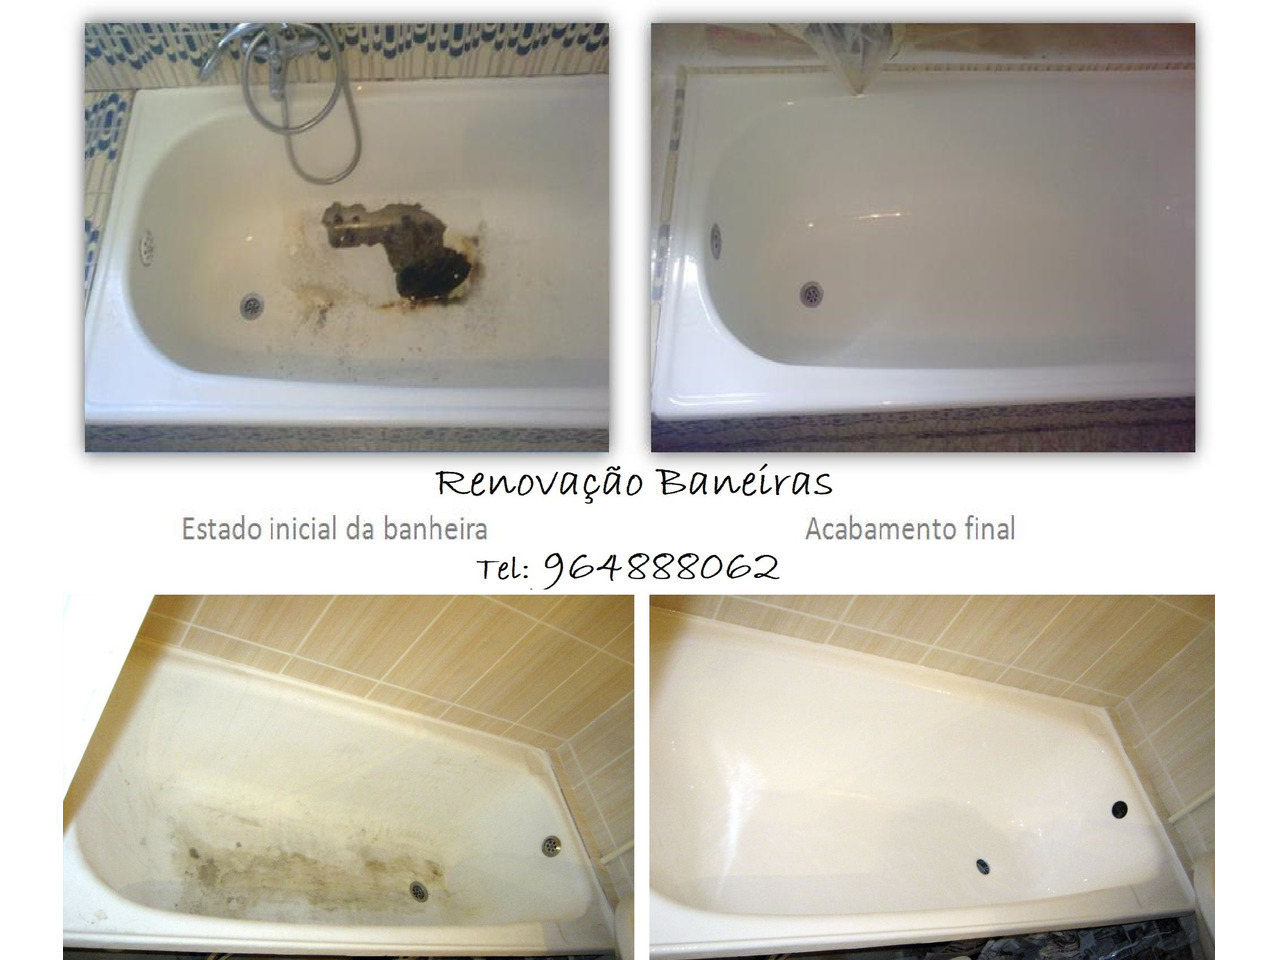 Renovação de banheiras - restauro, esmaltagem, vitrificação. - 1